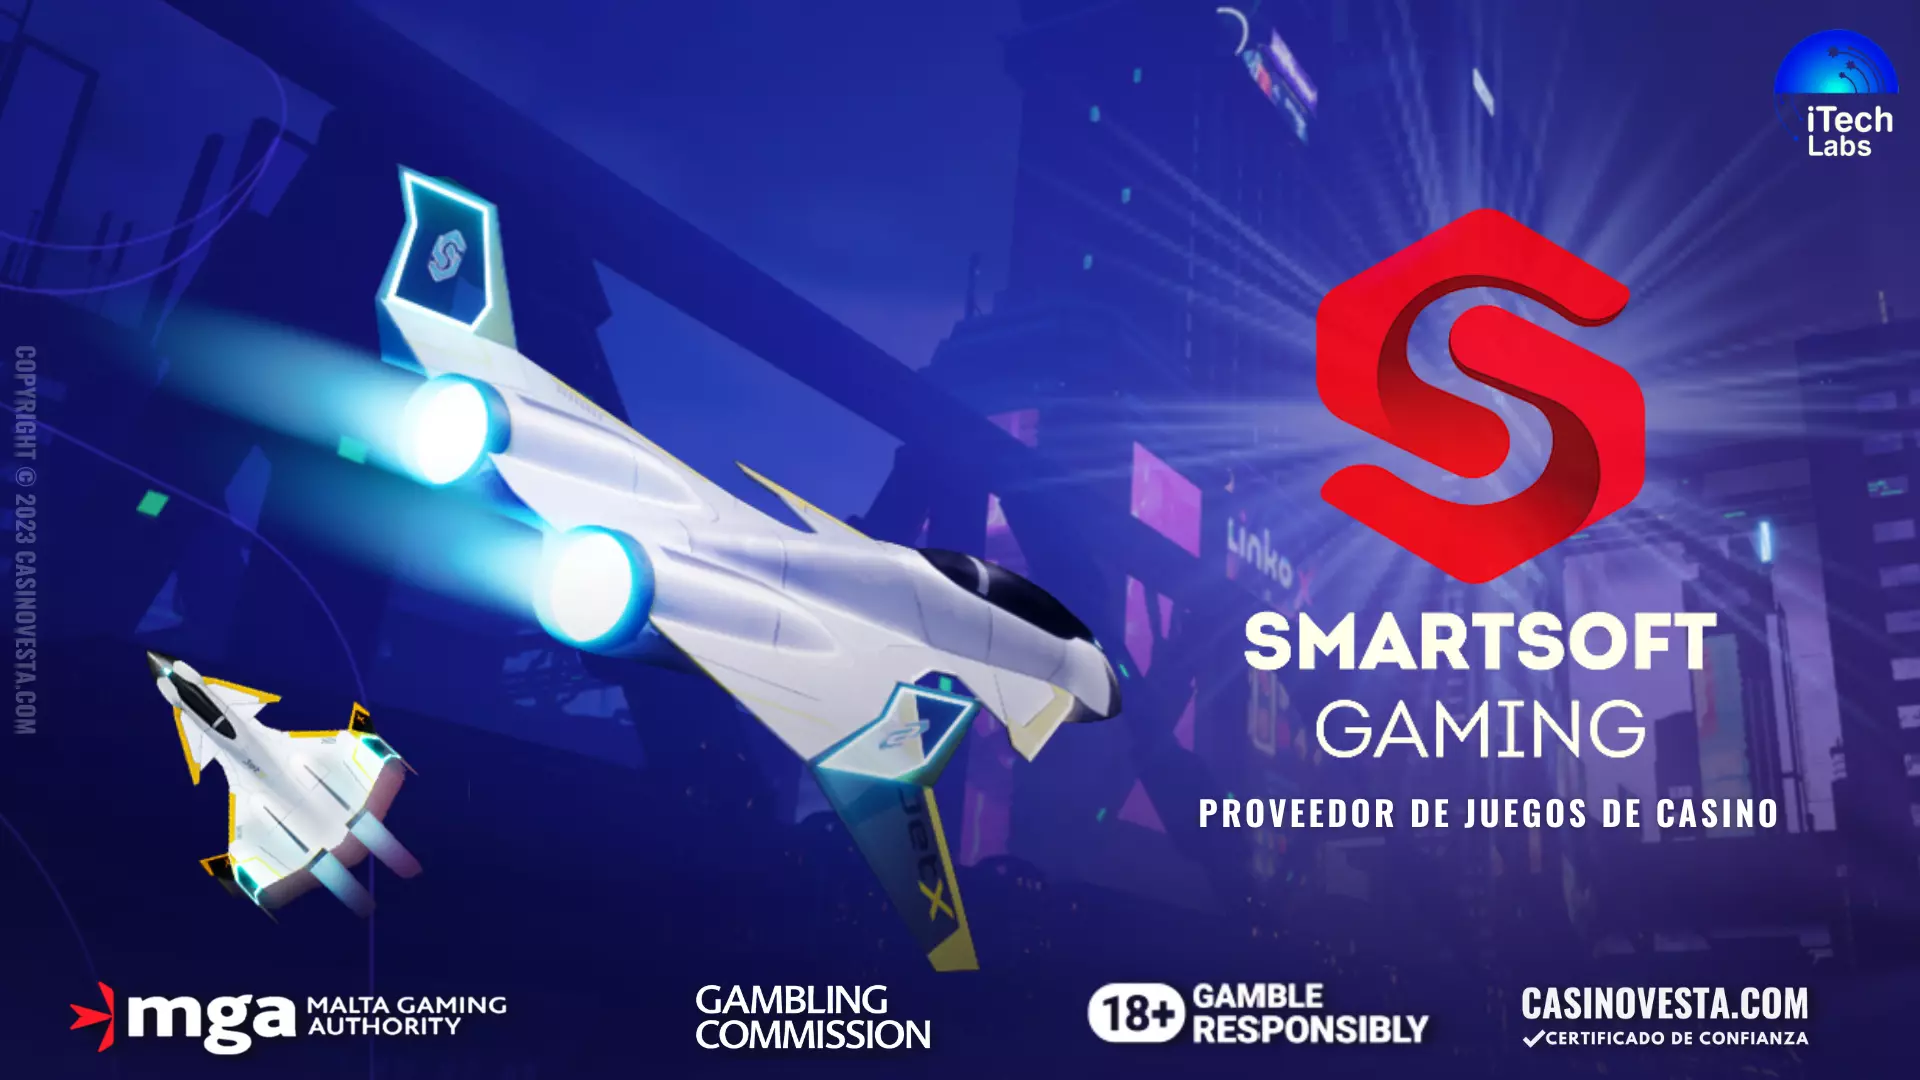 Revisión del proveedor de juegos de casino Smartsoft Gaming